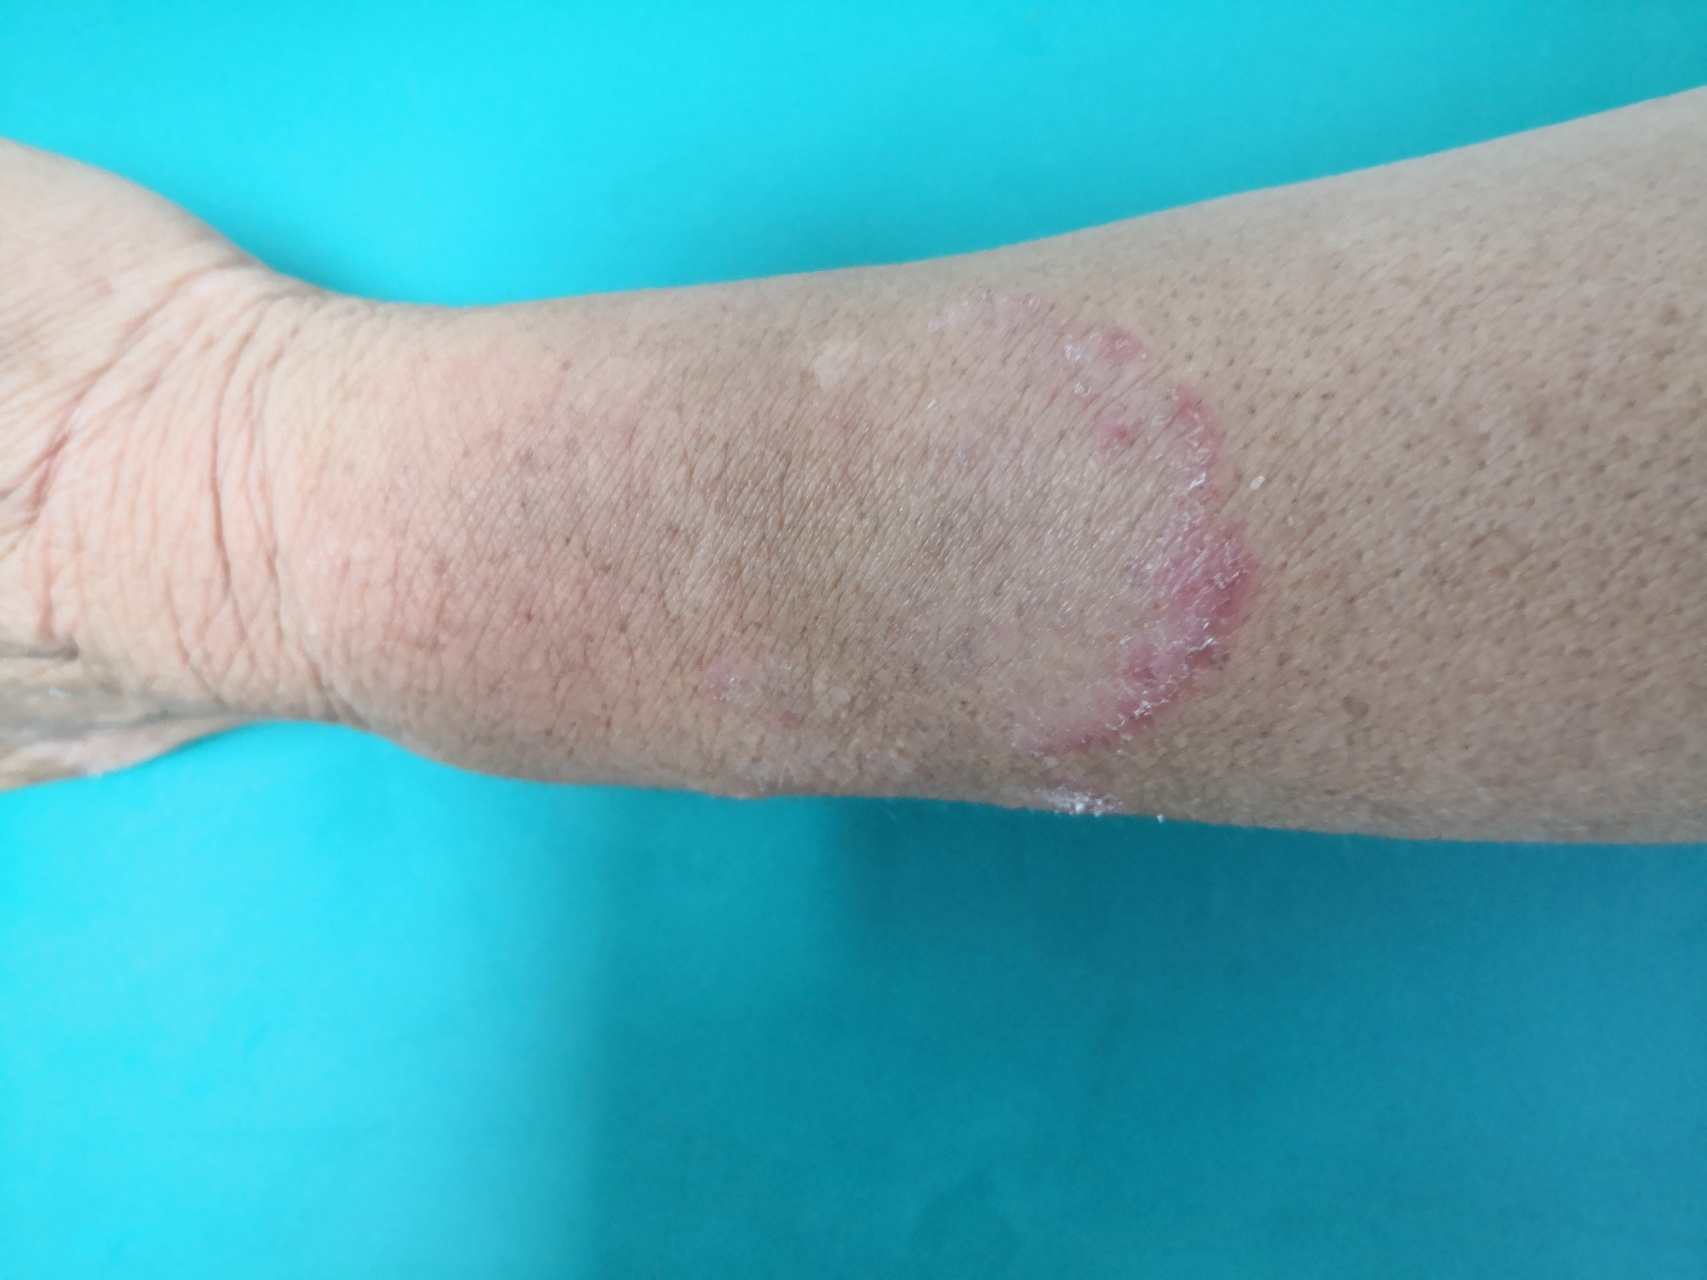 左侧手臂大片丘疹斑块,边界清楚真菌镜检阳性,诊断体癣